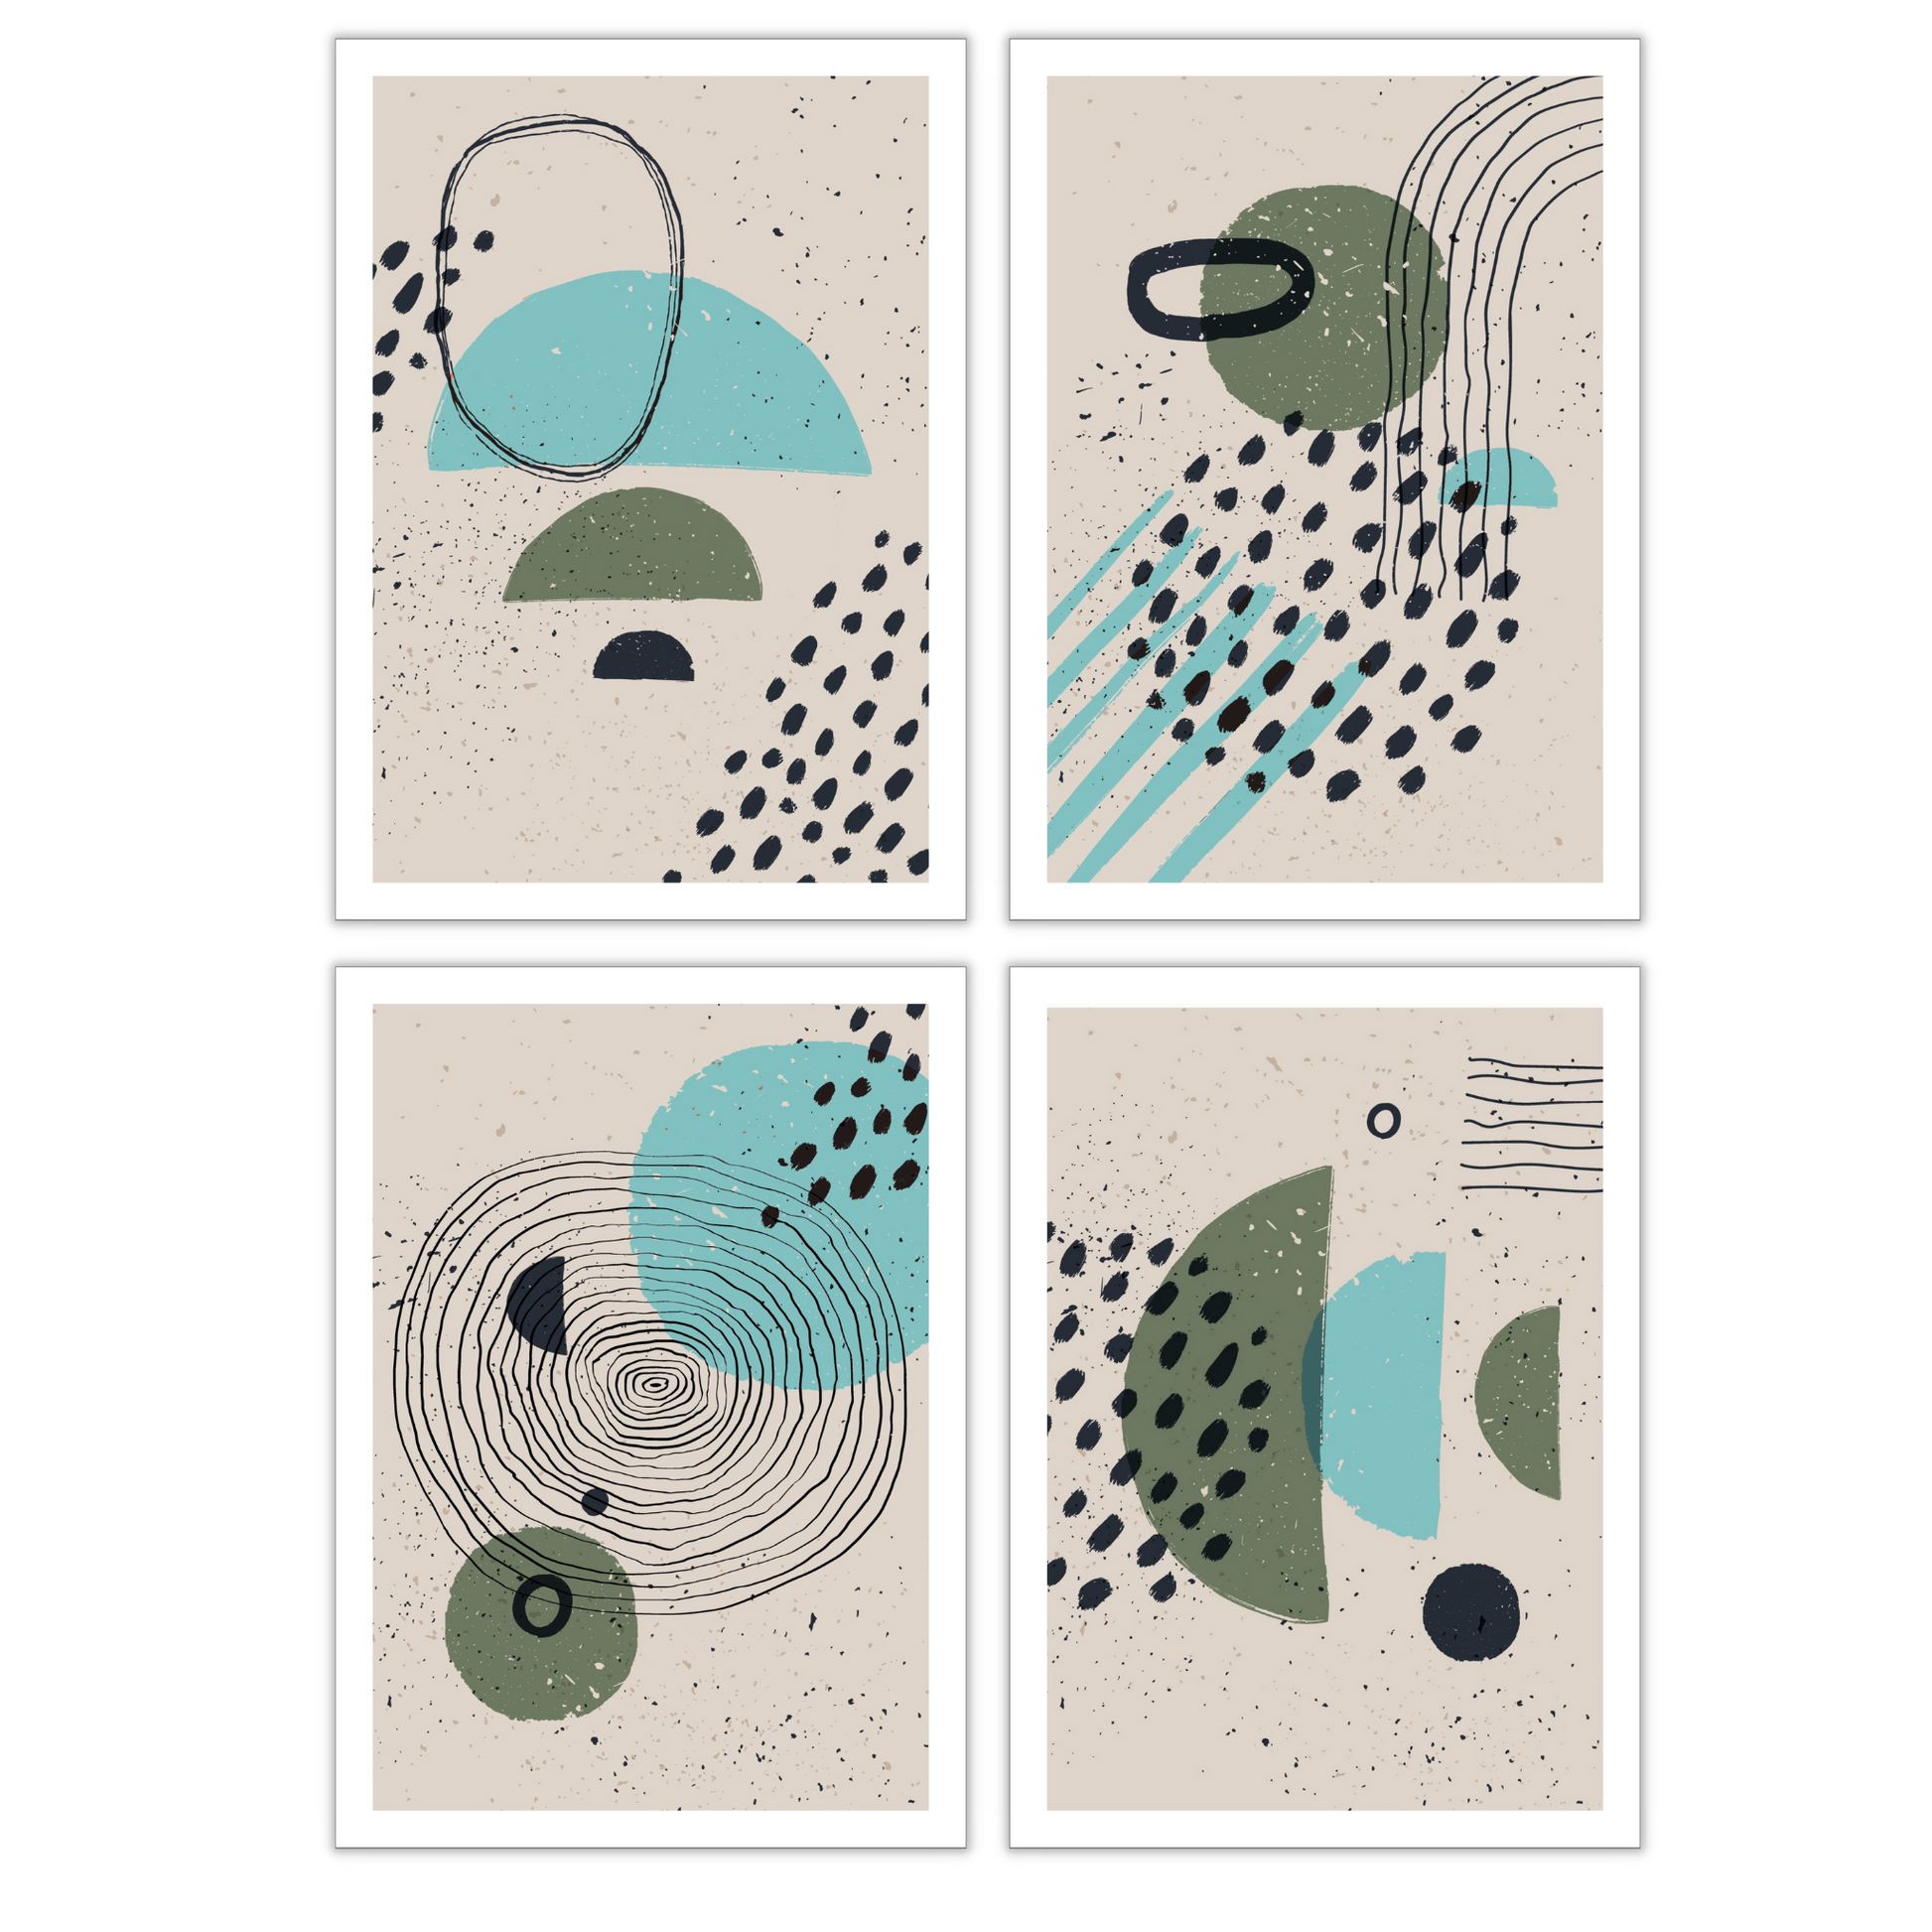 Serie med 4 motiver i abstrakt mønster. Fargenyanser i sort, turkis, grønn og beige